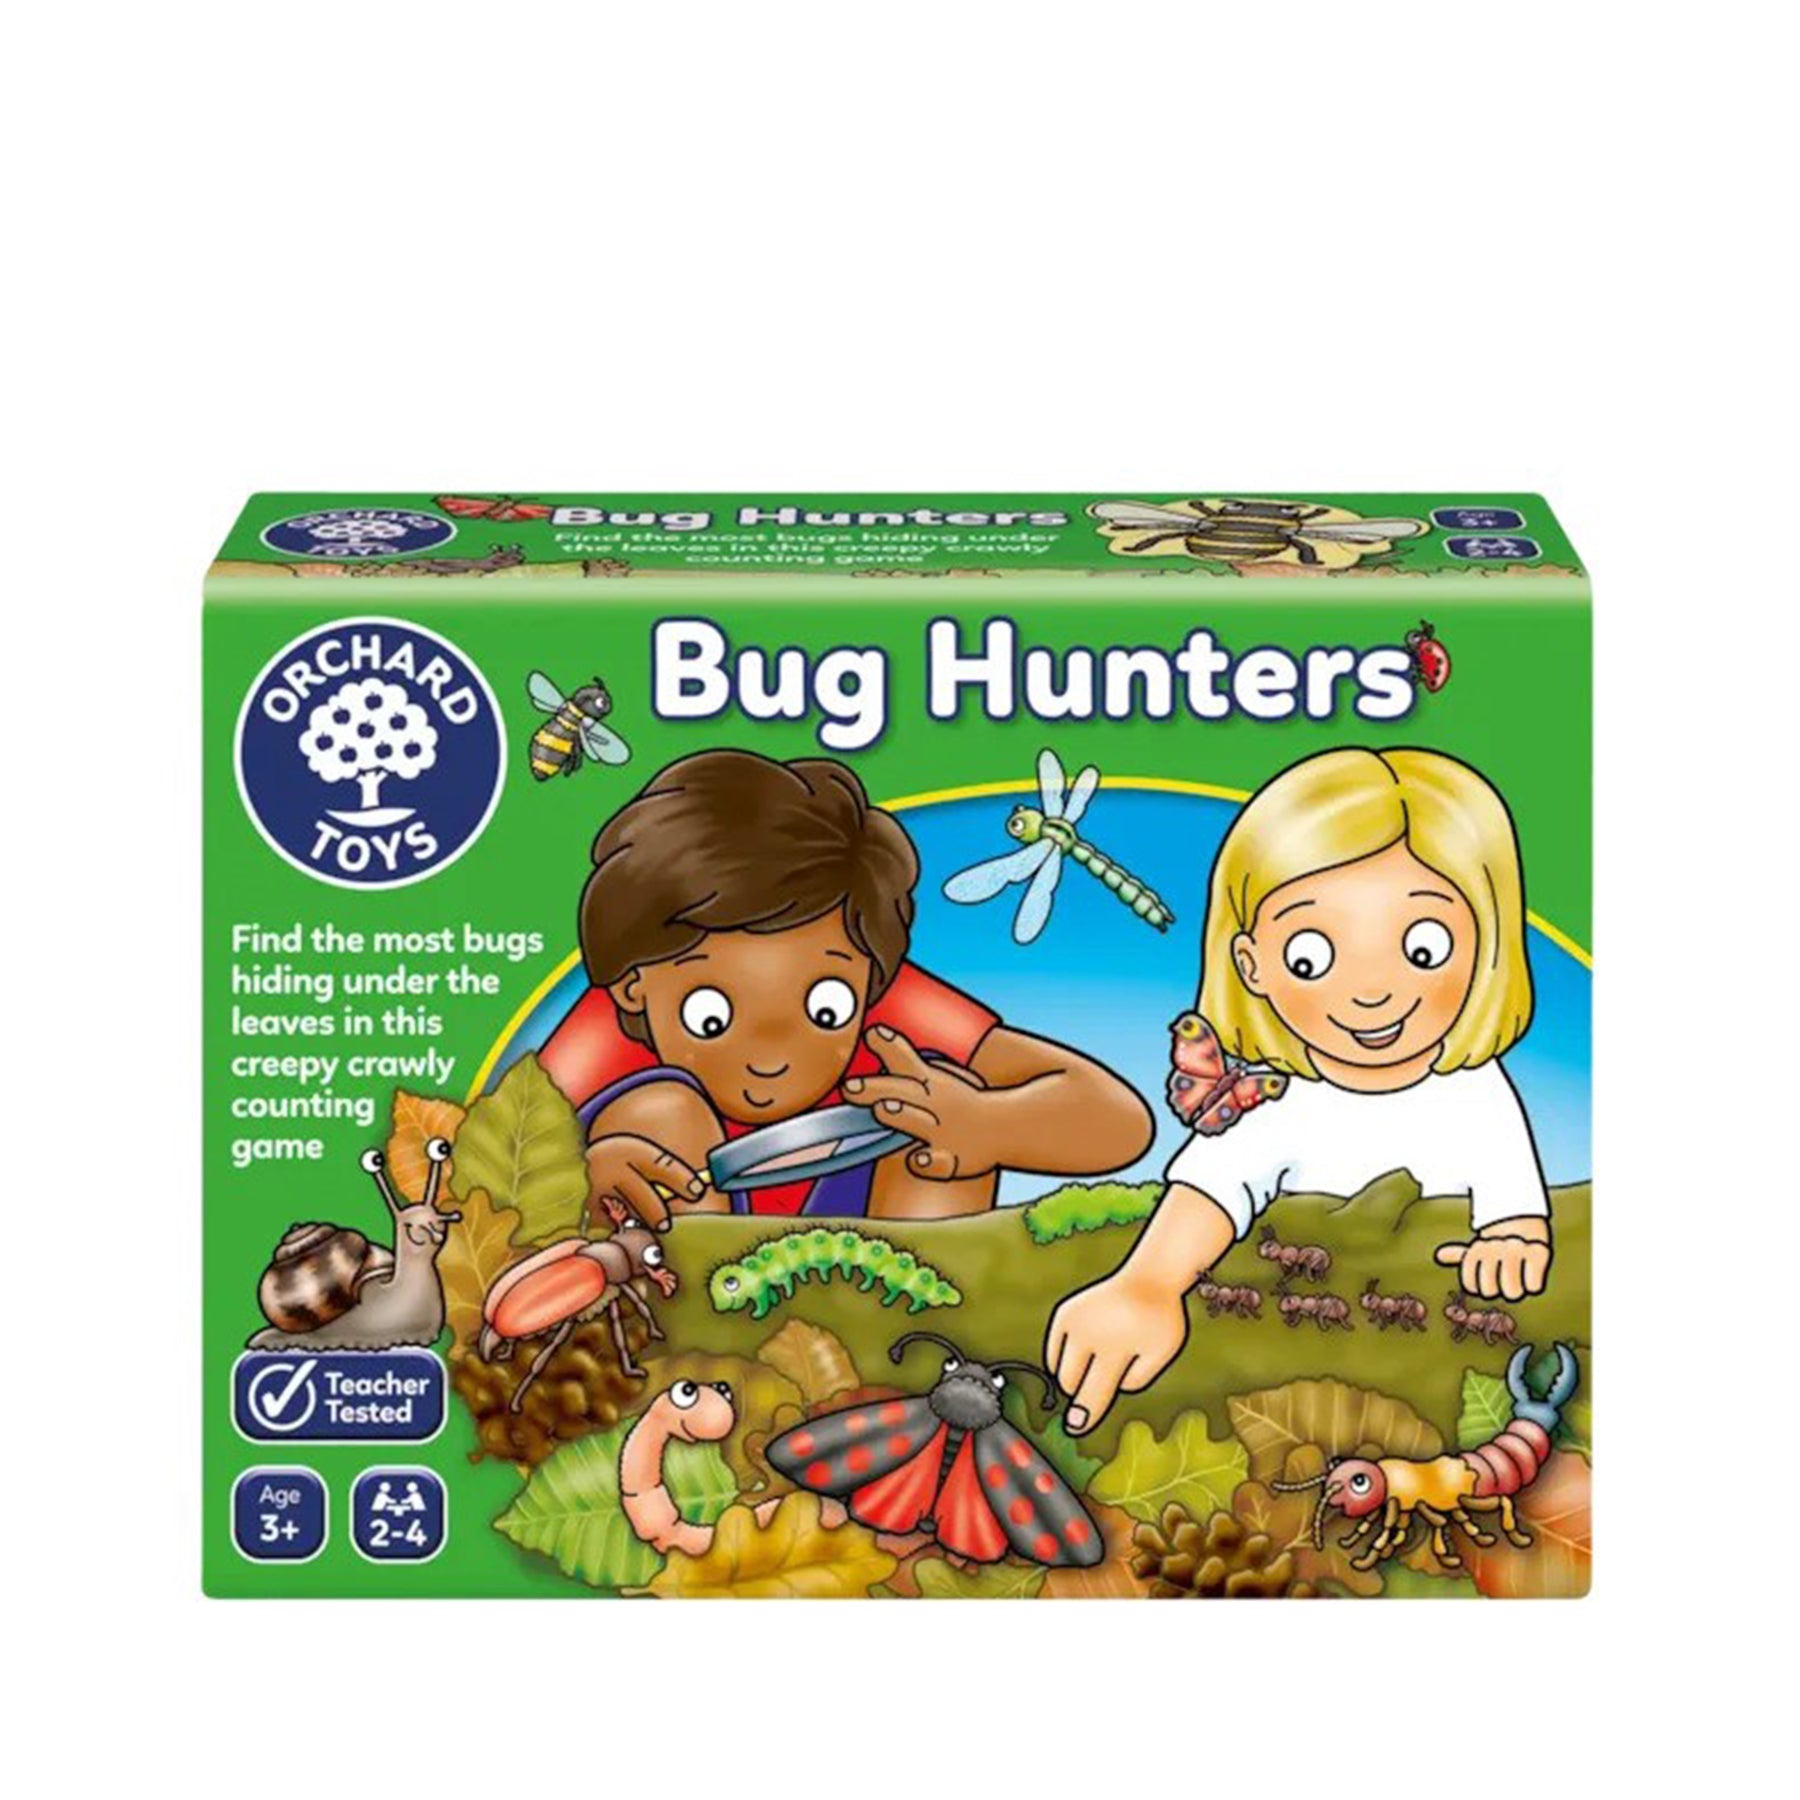 Bug hunters game